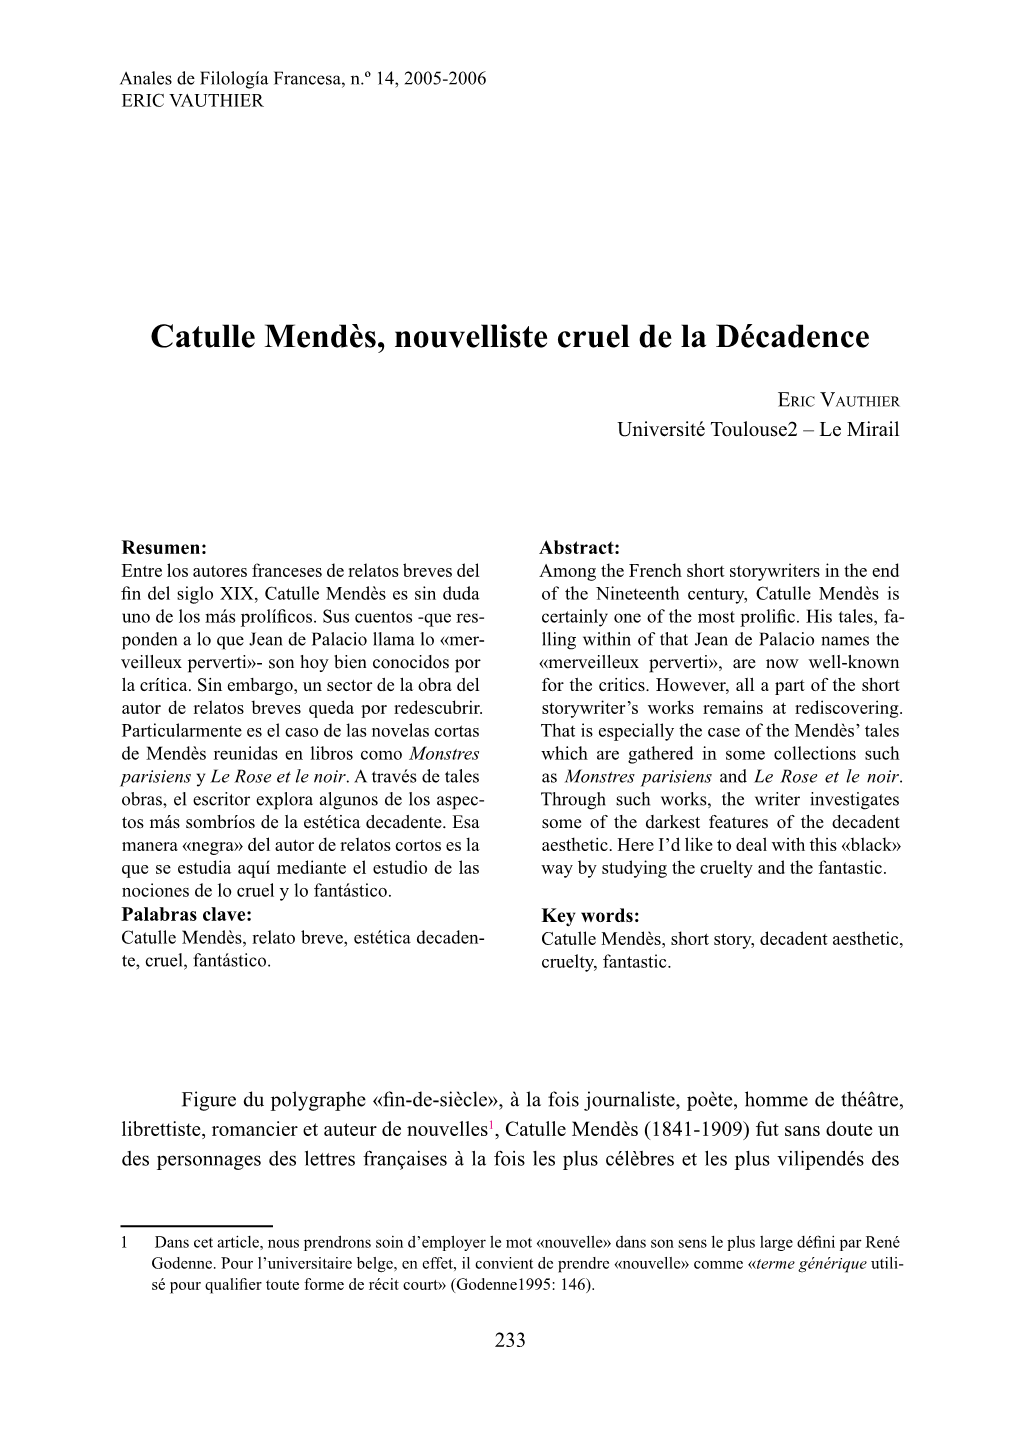 Catulle Mendès, Nouvelliste Cruel De La Décadence